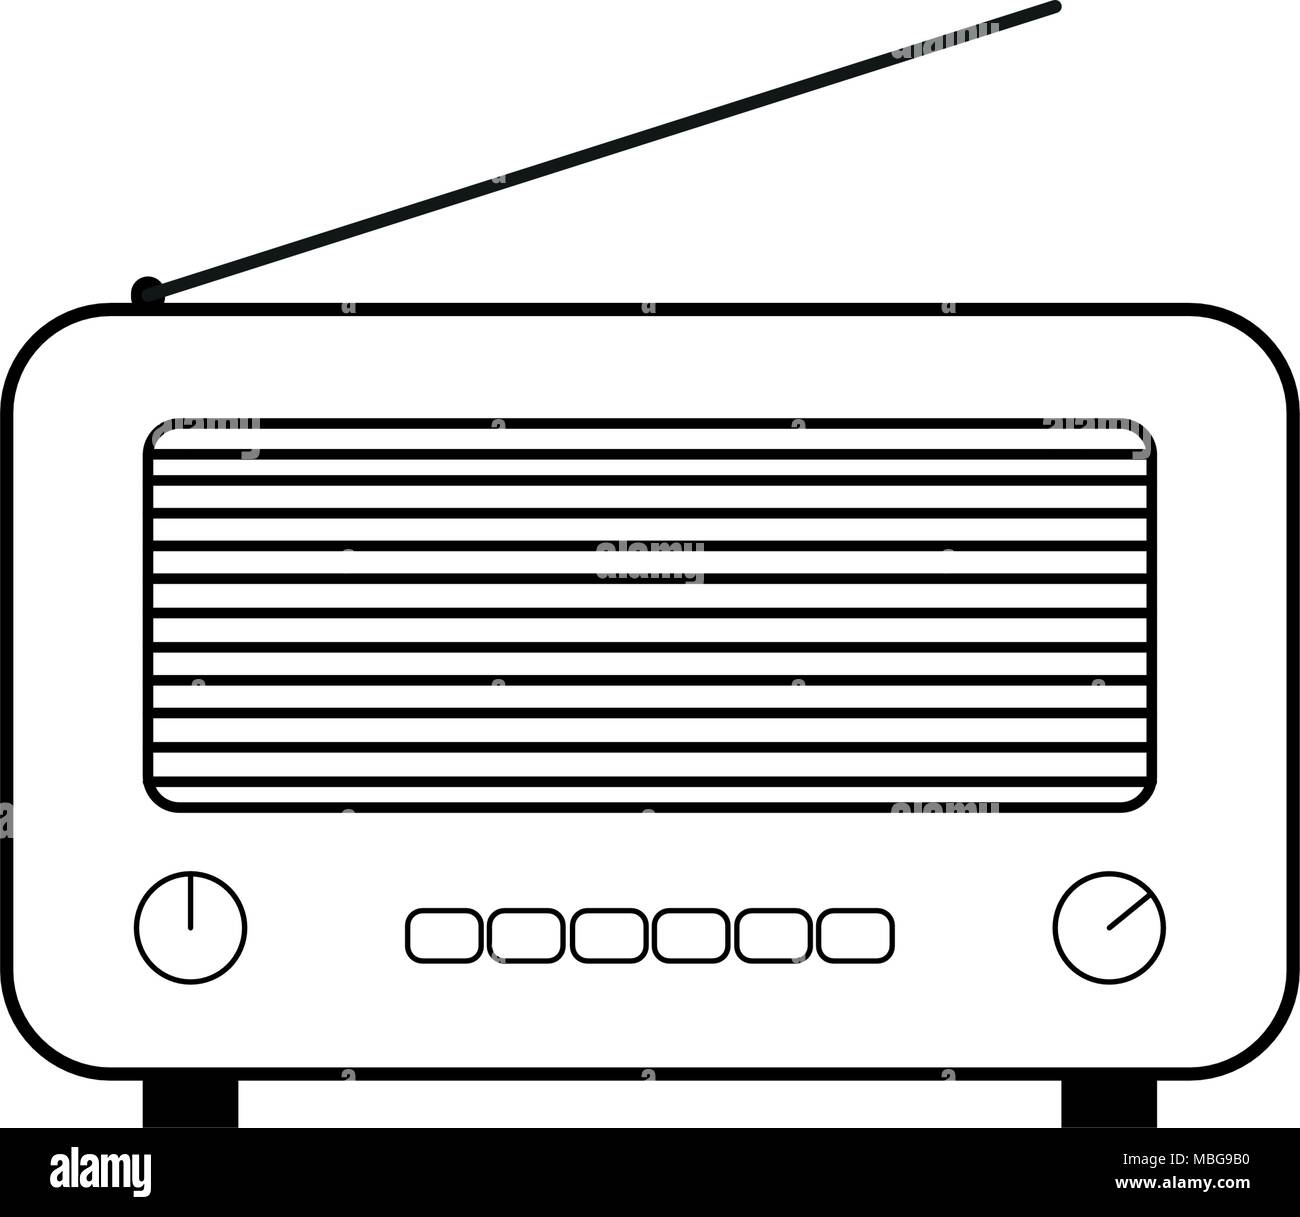 Antena de radio antigua Imágenes vectoriales de stock - Alamy